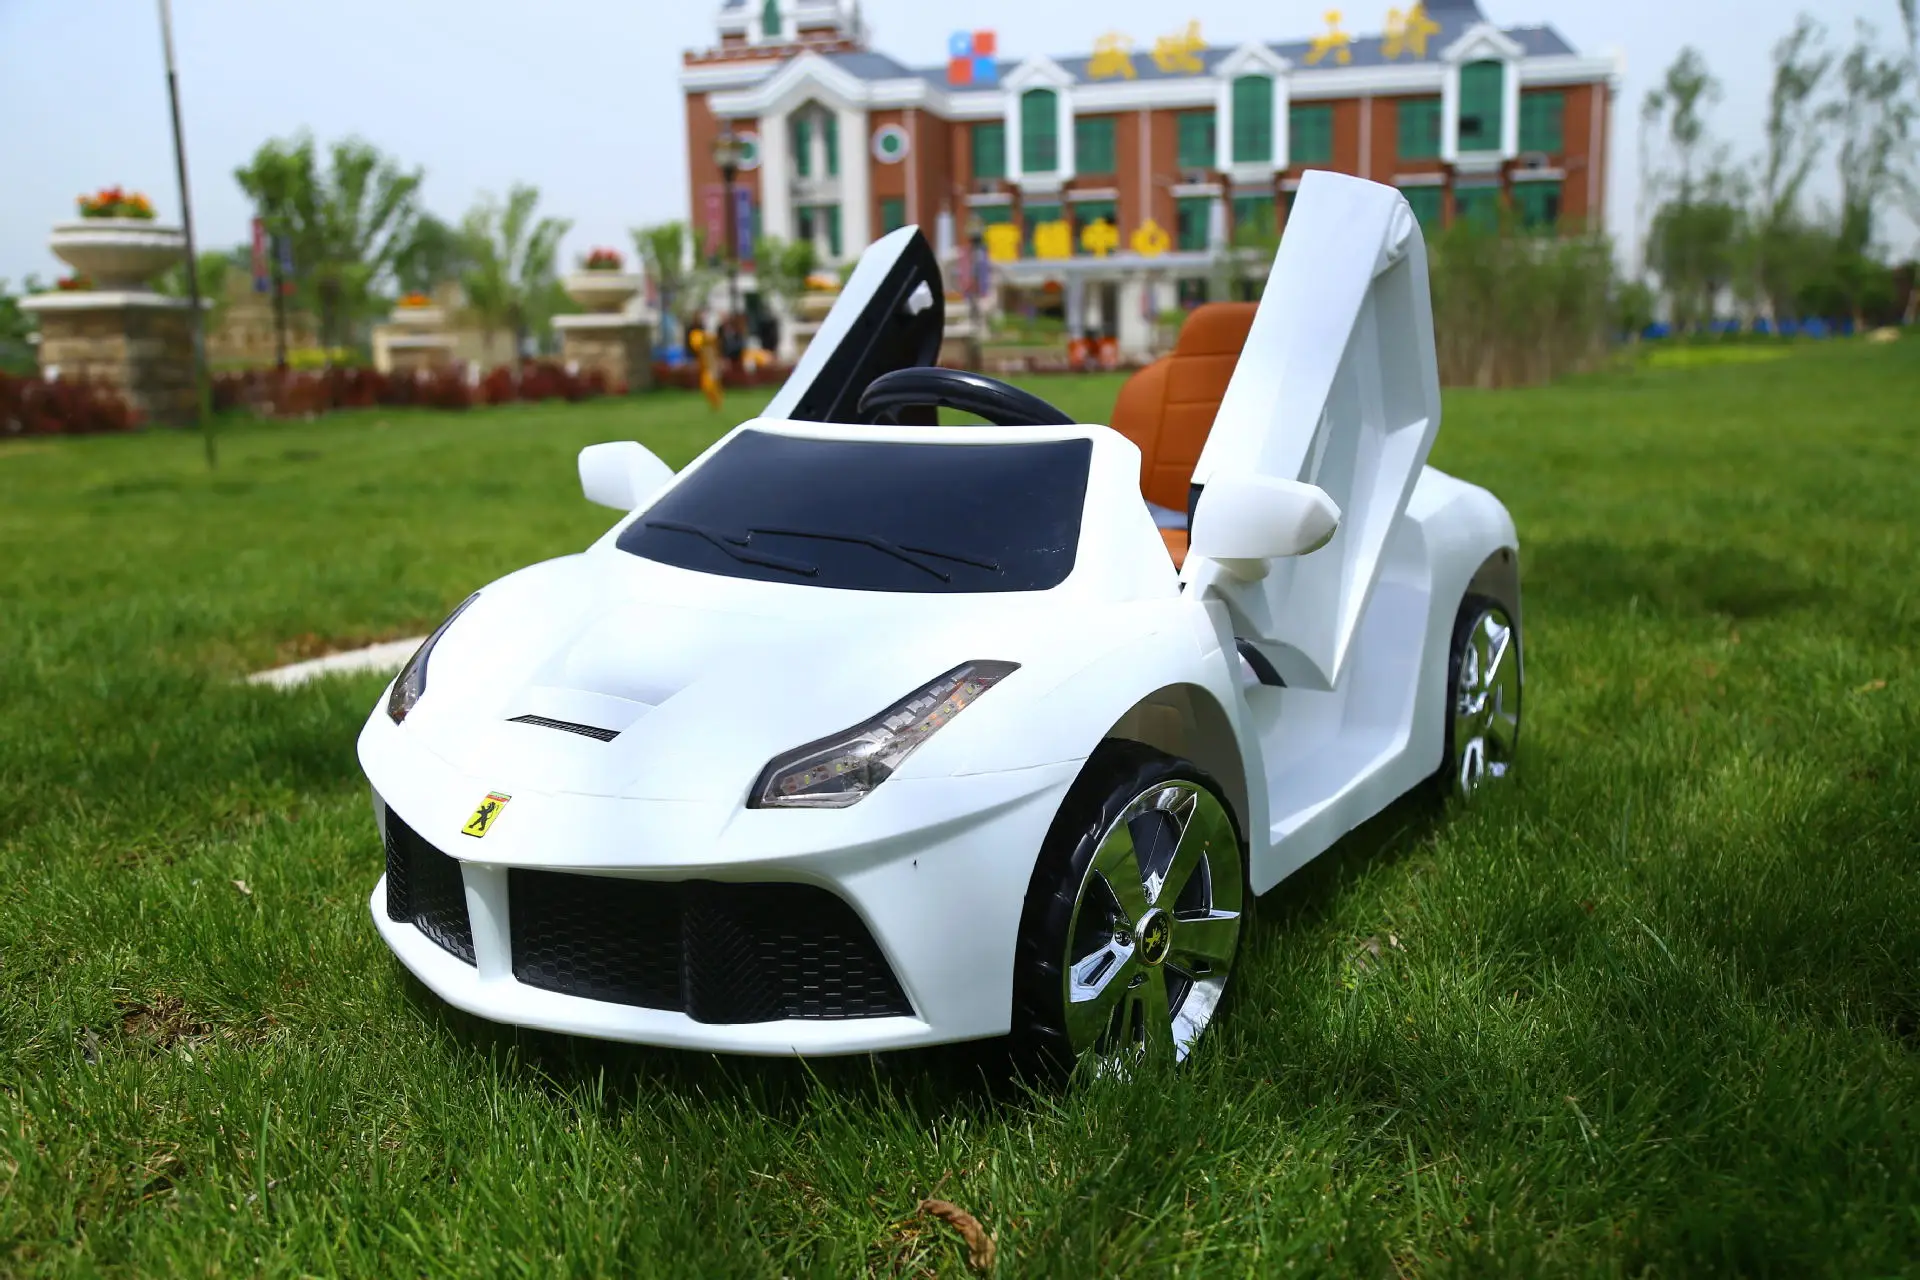 Детский Электрический четырехколесный двухдверный спортивный автомобиль, электрический автомобиль для детей, игрушечный электрический автомобиль